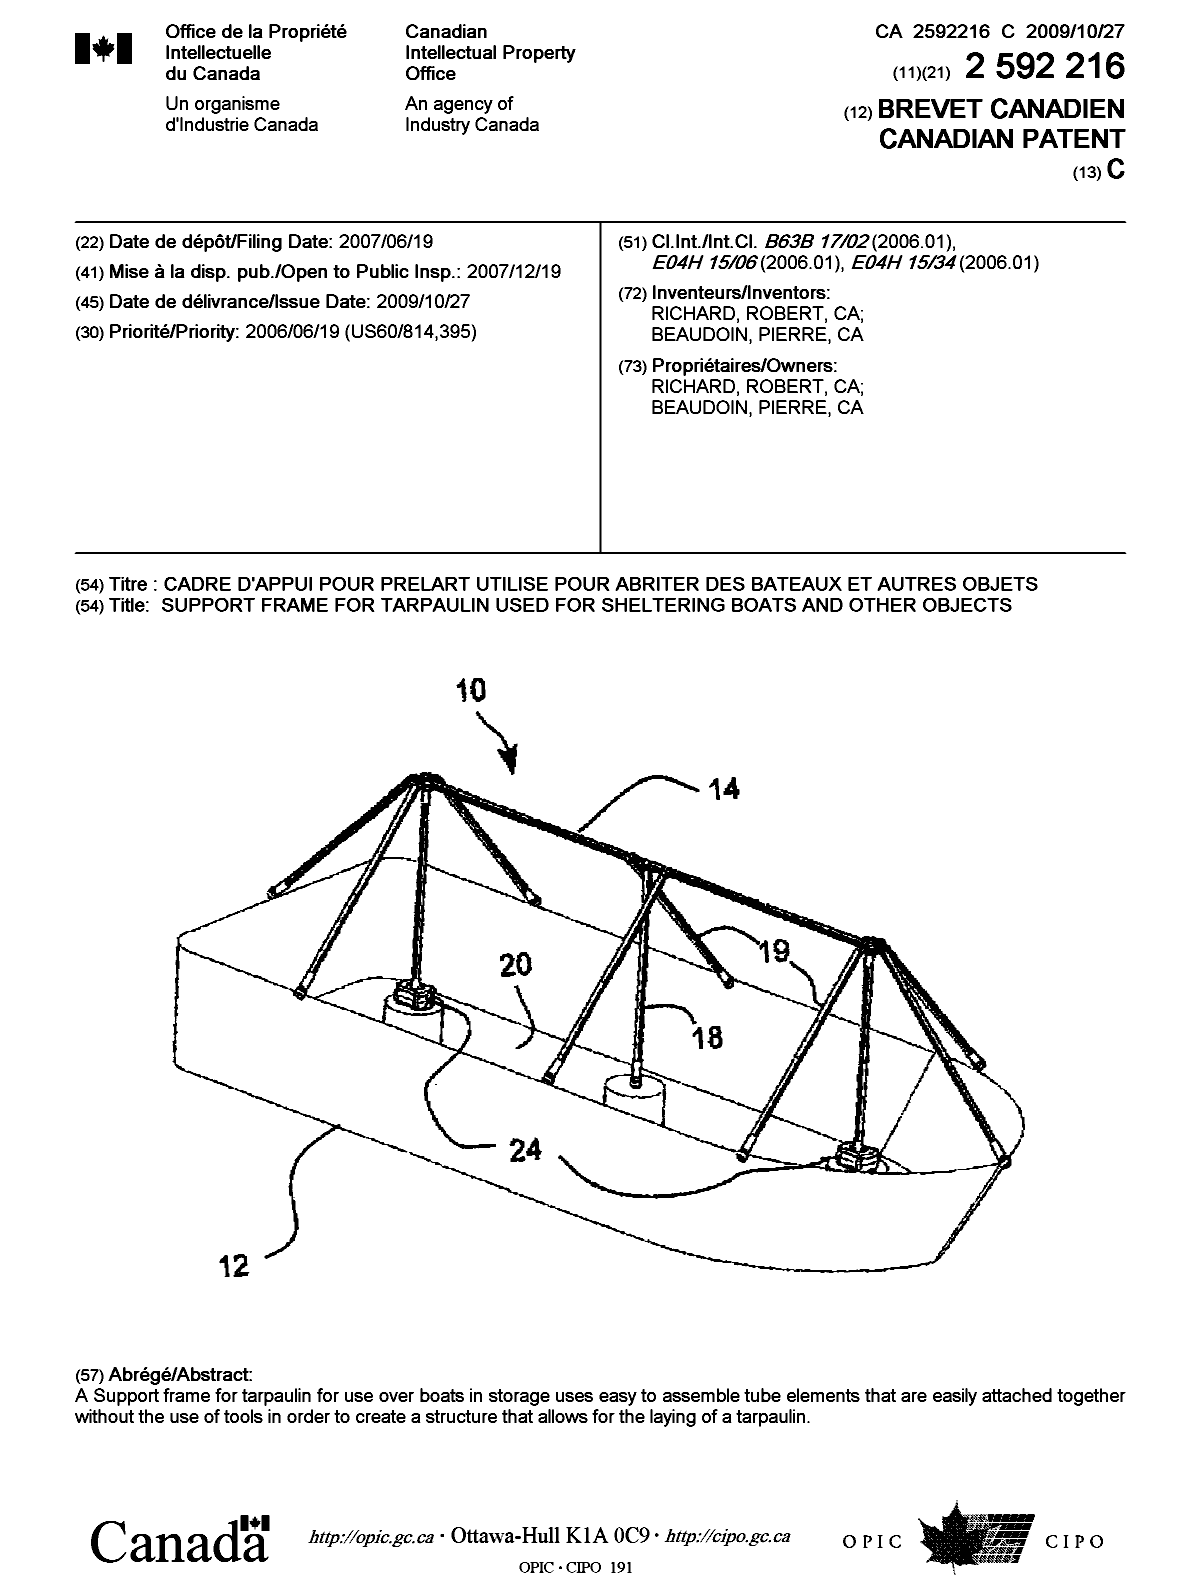 Document de brevet canadien 2592216. Page couverture 20091006. Image 1 de 1